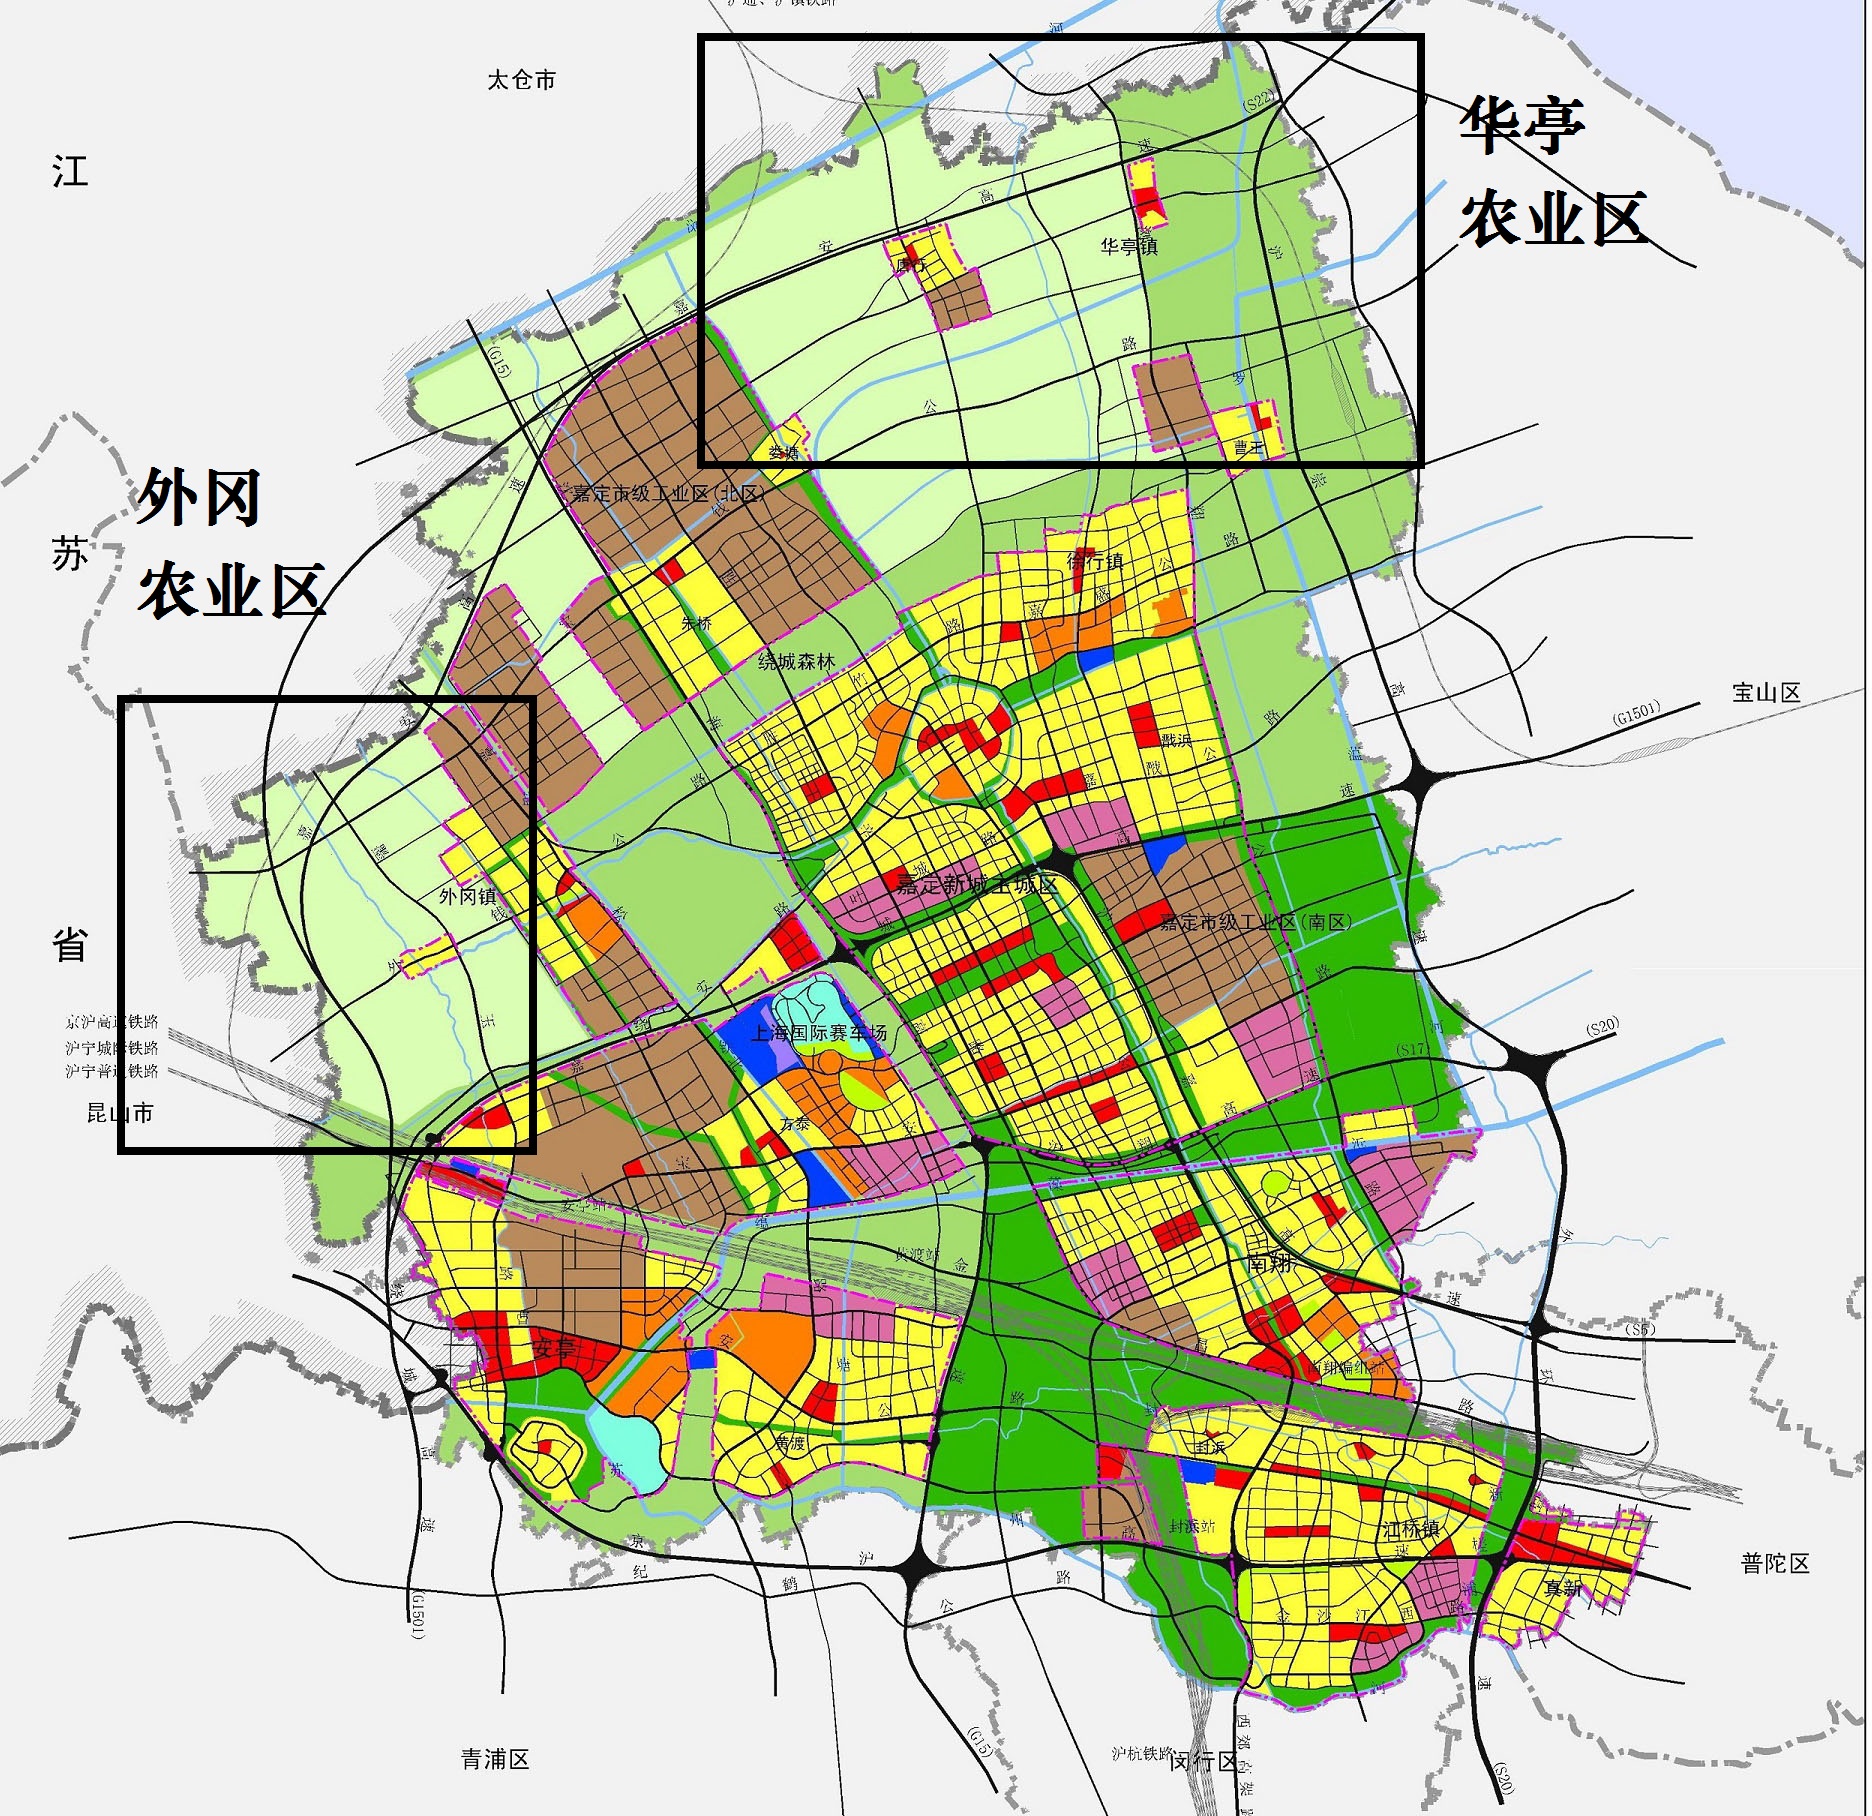 上海嘉定区一个极具创新的农村改造计划:大部分拆除,部分保留